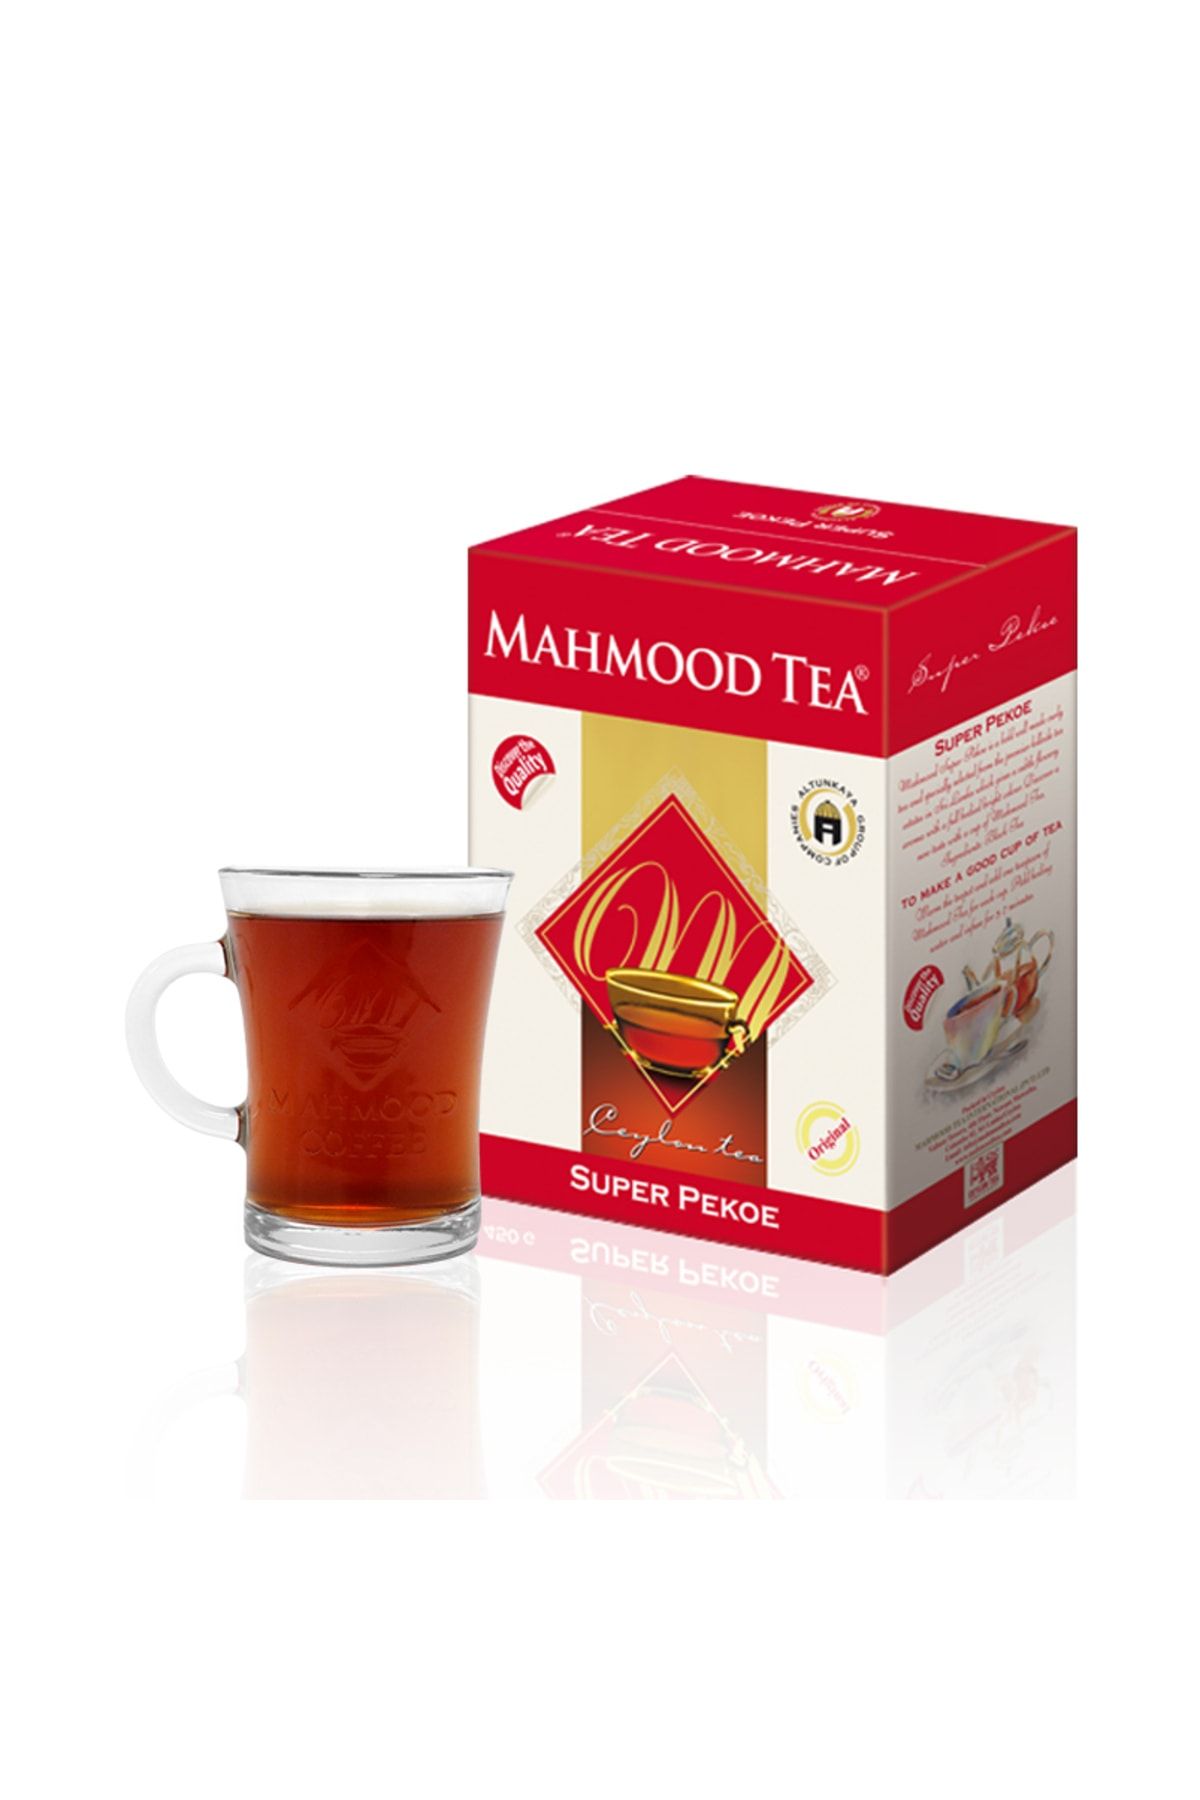 Mahmood Tea Ithal %100 Saf Seylan Pekoe Dökme Çayı 800 Gr Bardak Hediyeli